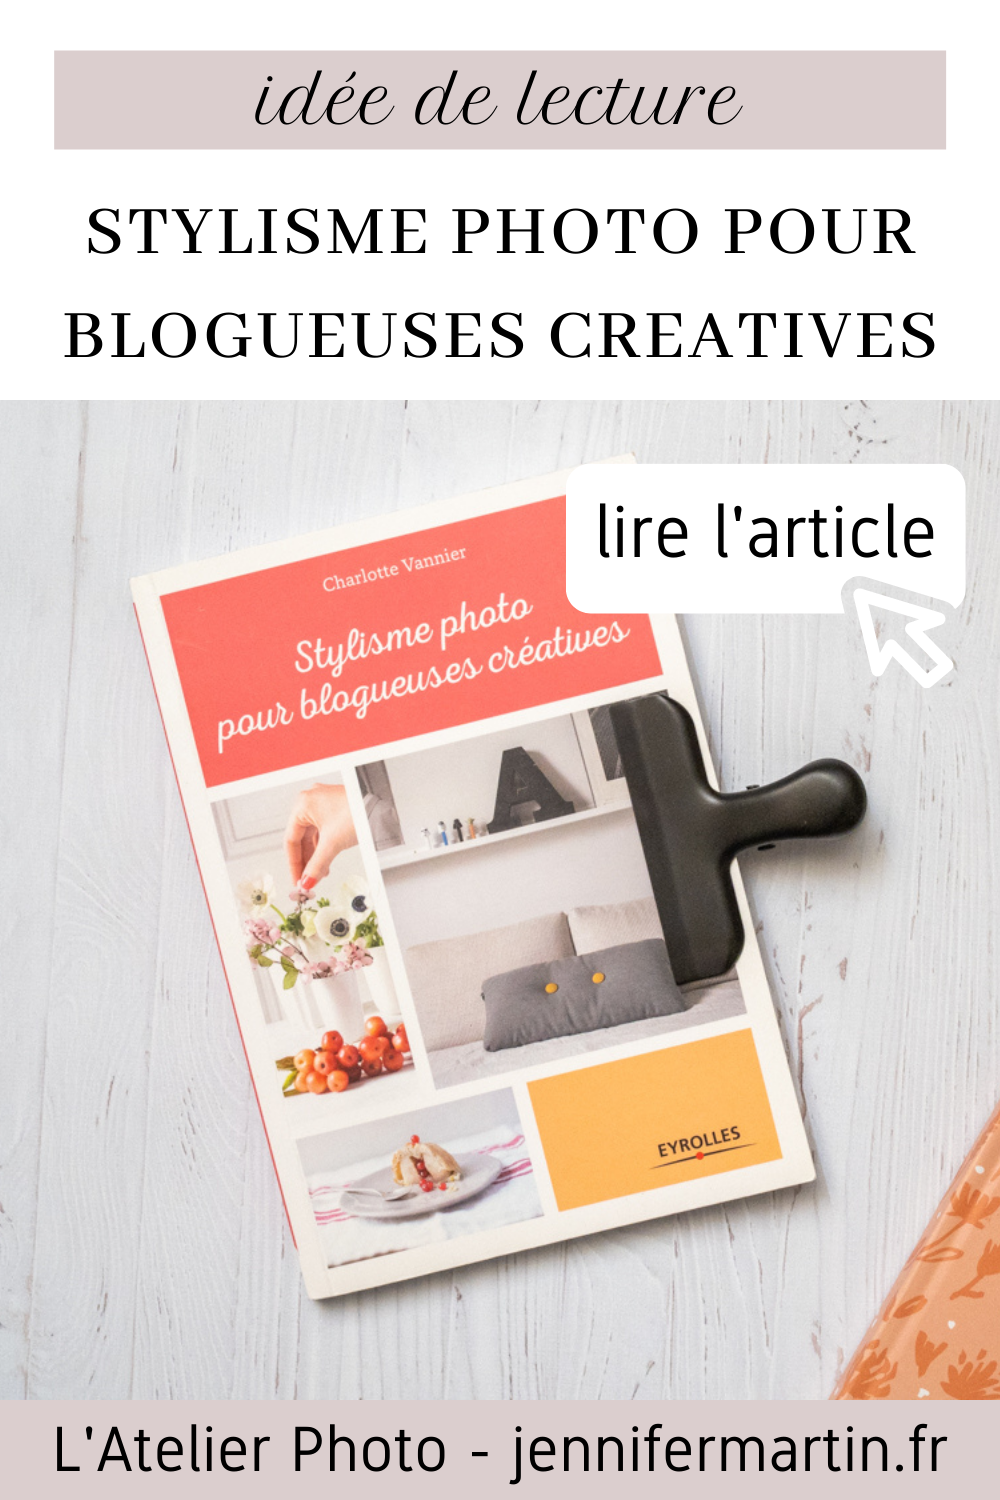 L'Atelier Photo | Stylisme photo pour blogueuses créatives (ed. Eyrolles)